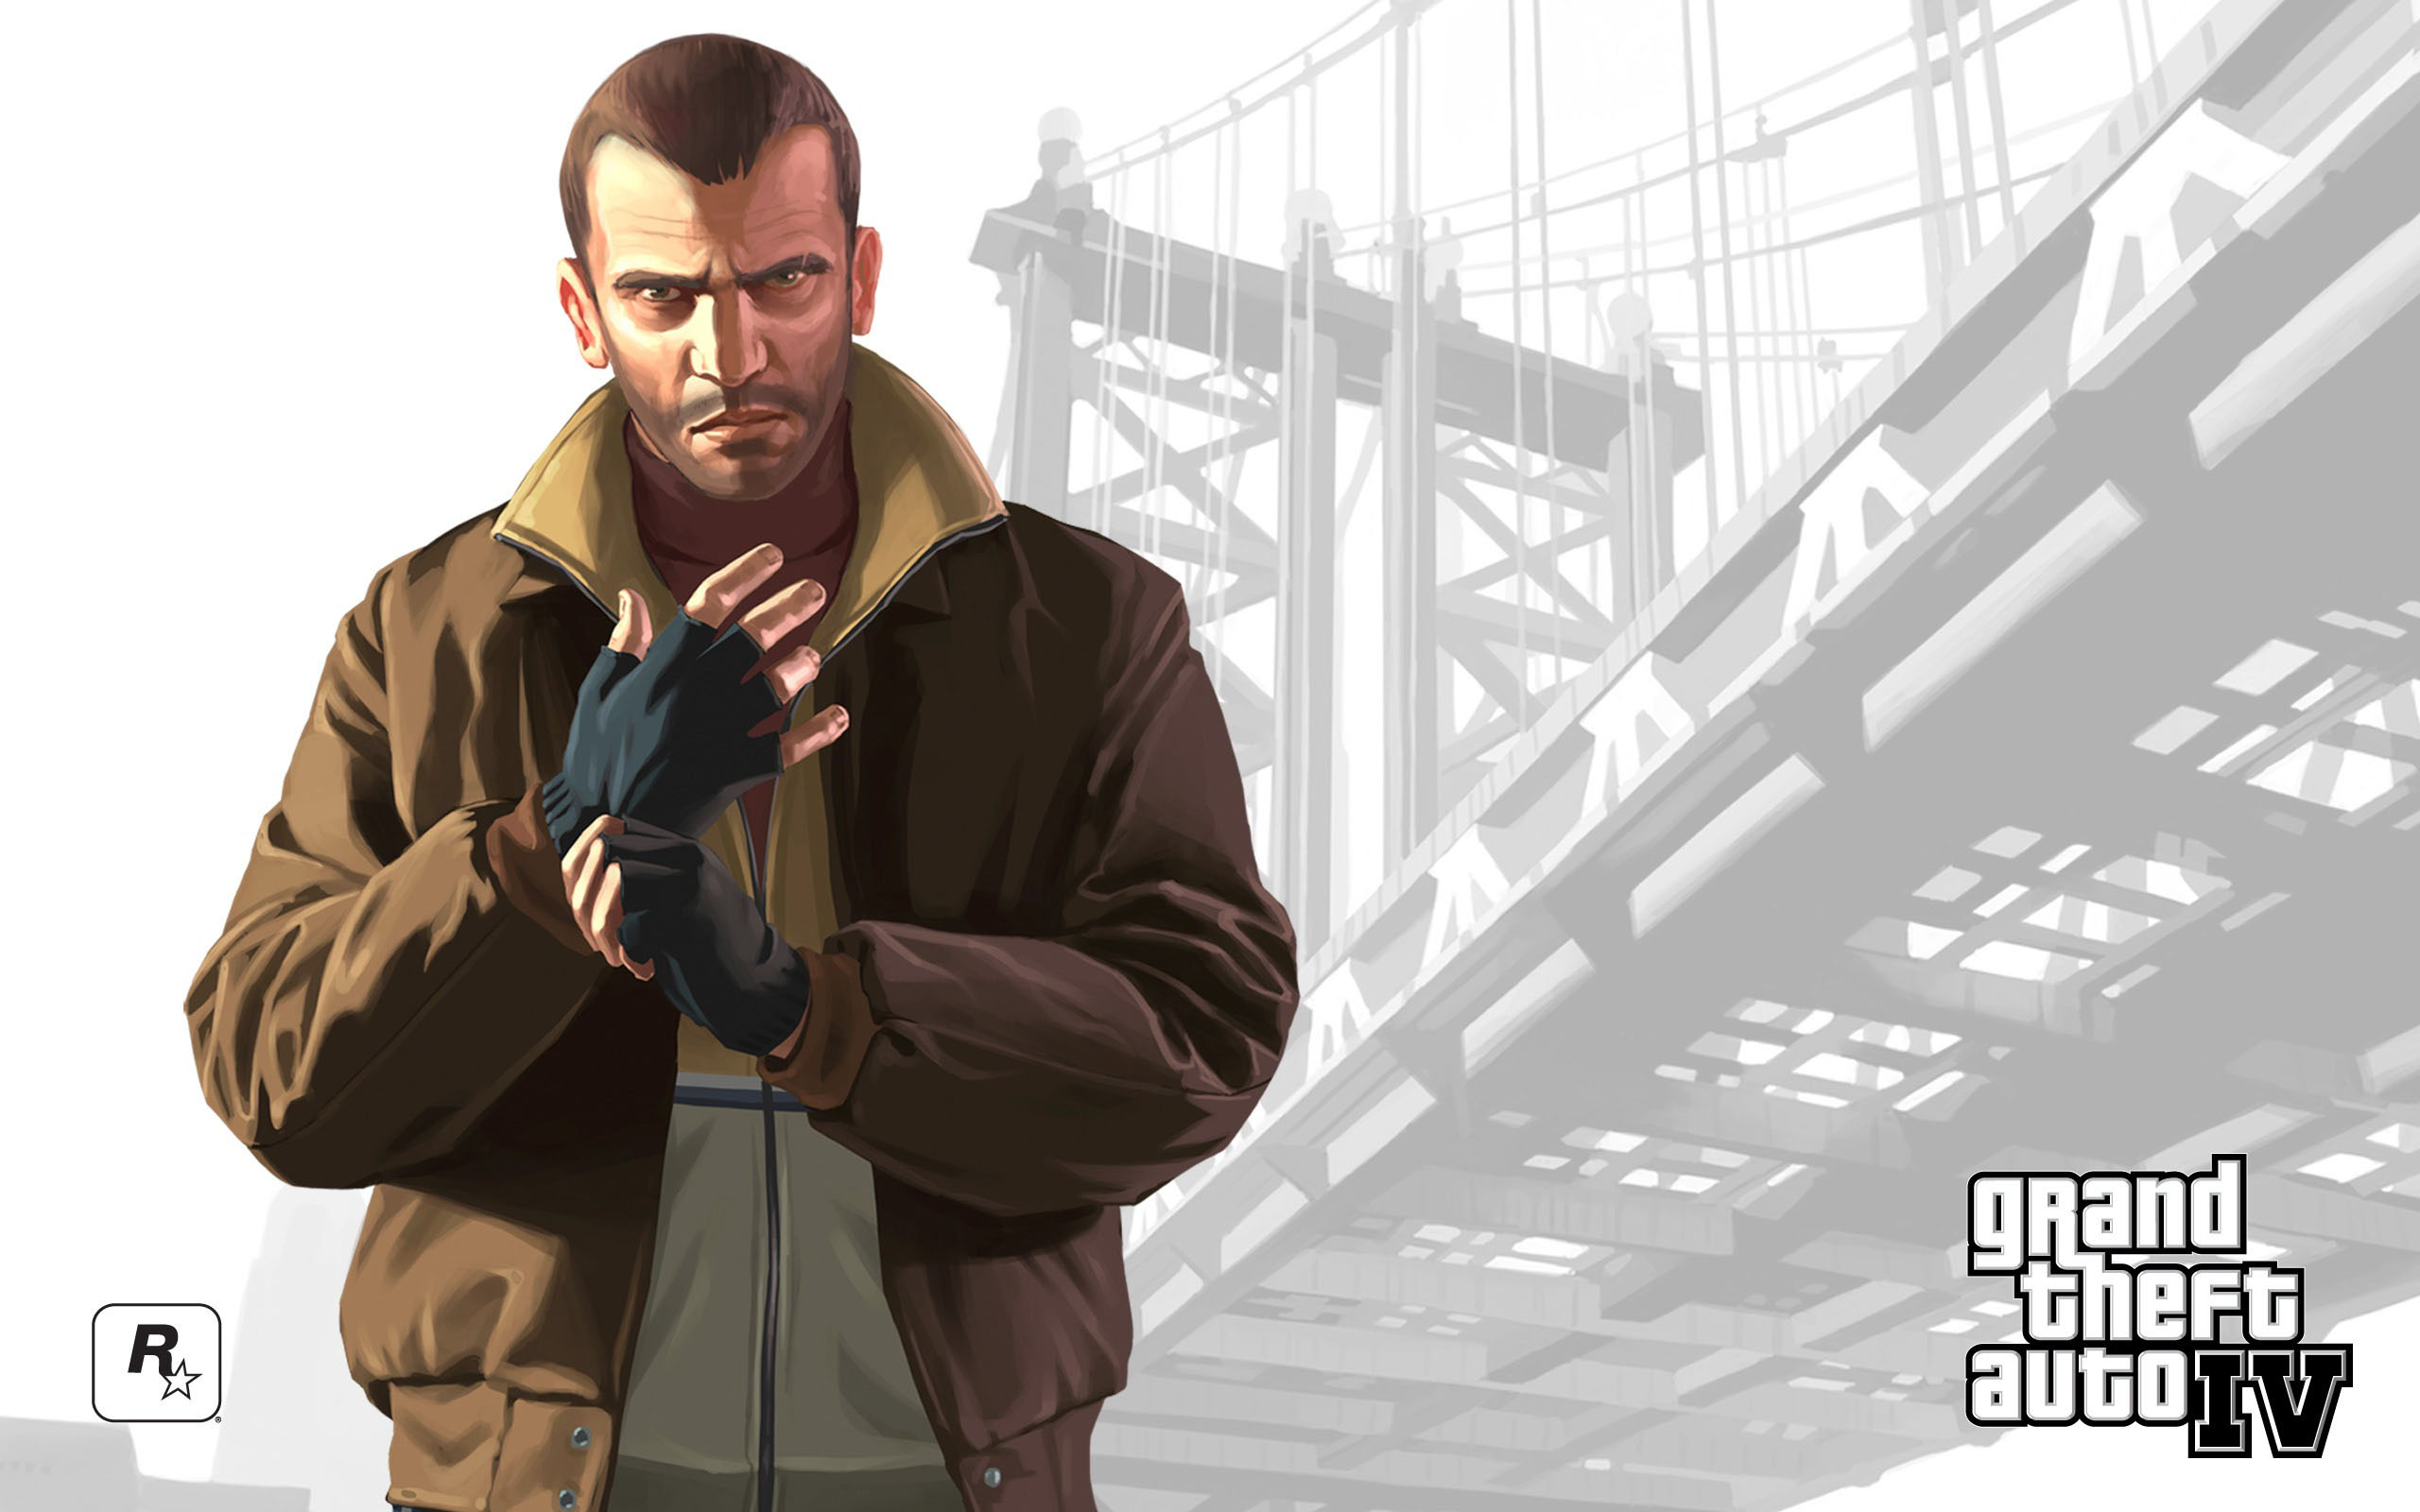 codo sencillo Alcalde Niko Bellic from Grand Theft Auto – Game Art | Game-Art-HQ